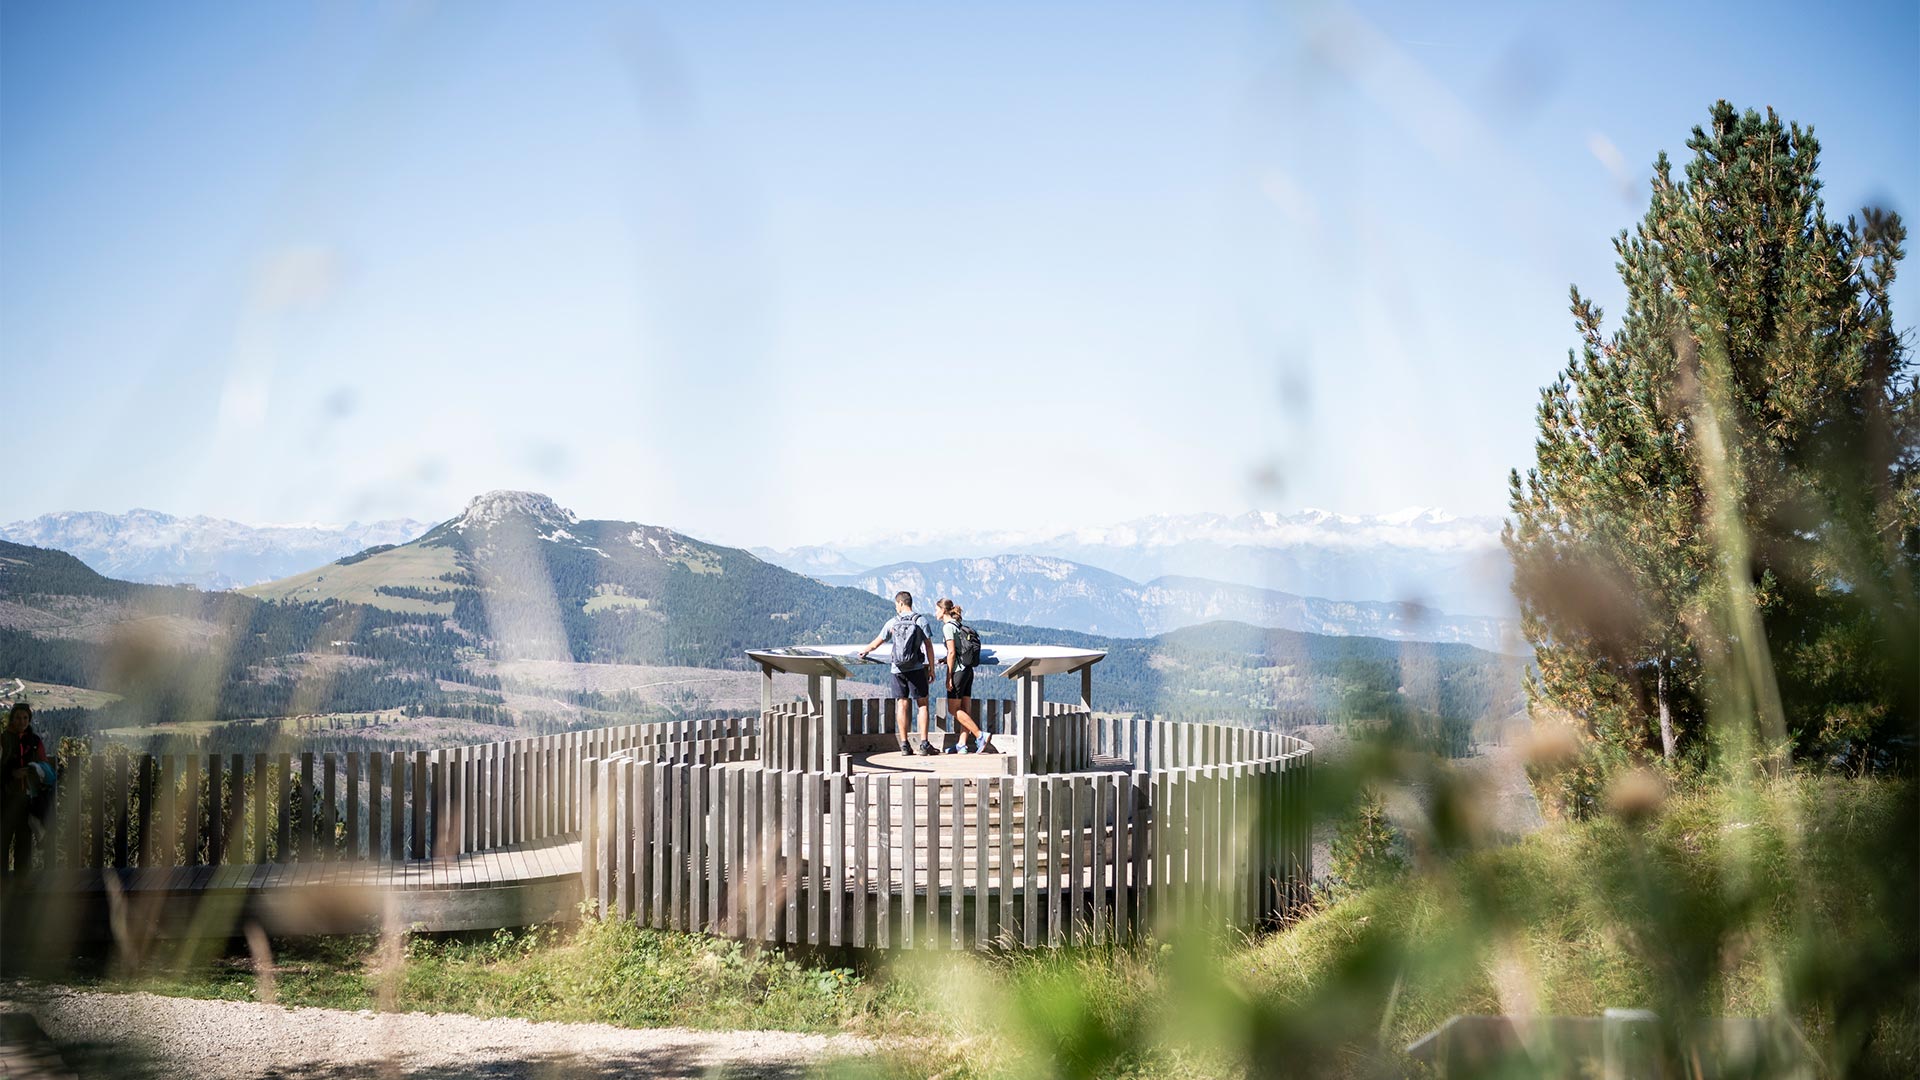 Zwei Wanderer stehen an einer Sehenswürdigkeit auf den Bozner Gipfeln und lesen Informationen über die Geschichte und Geographie der Landschaft.